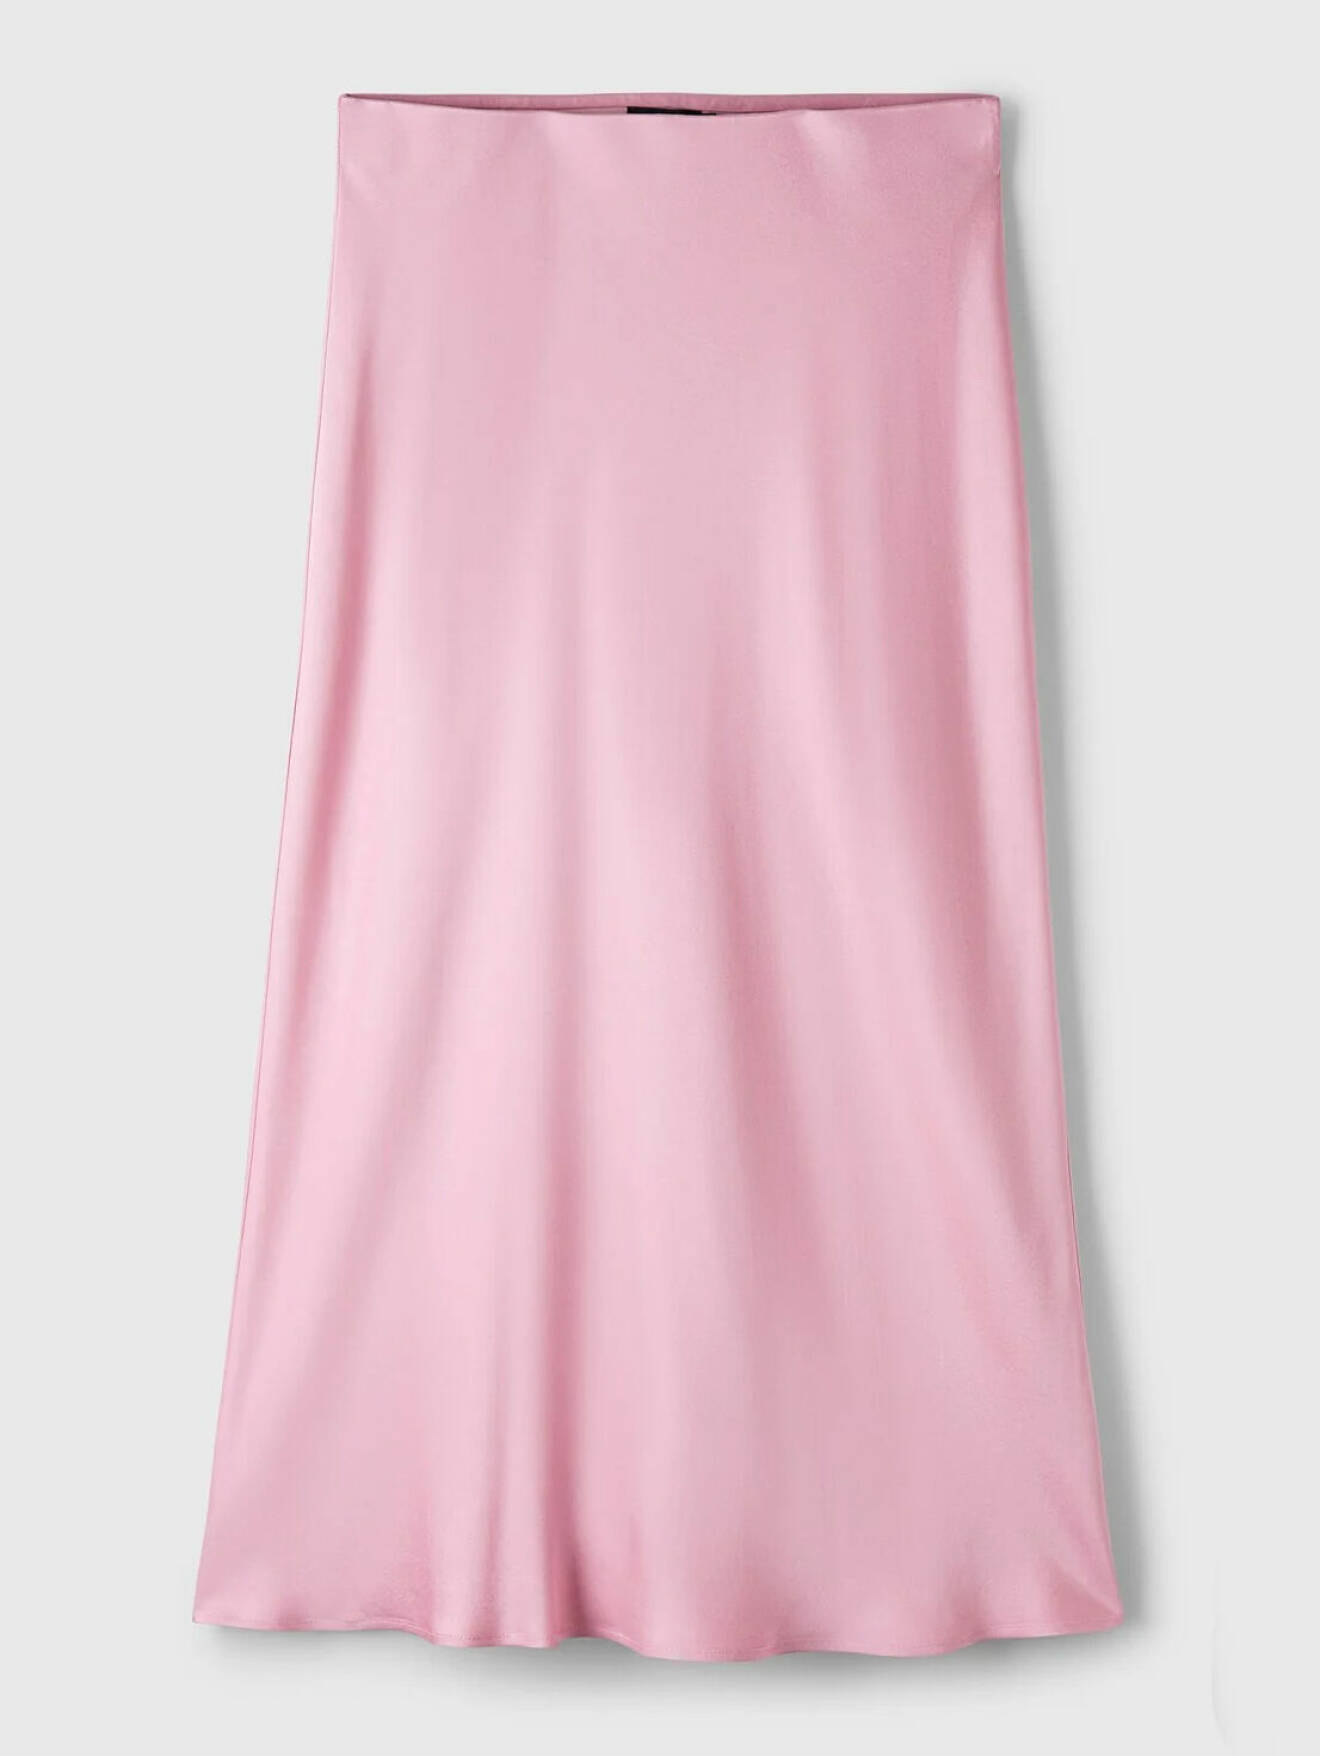 Festfin rosa vadlång kjol från MQ.